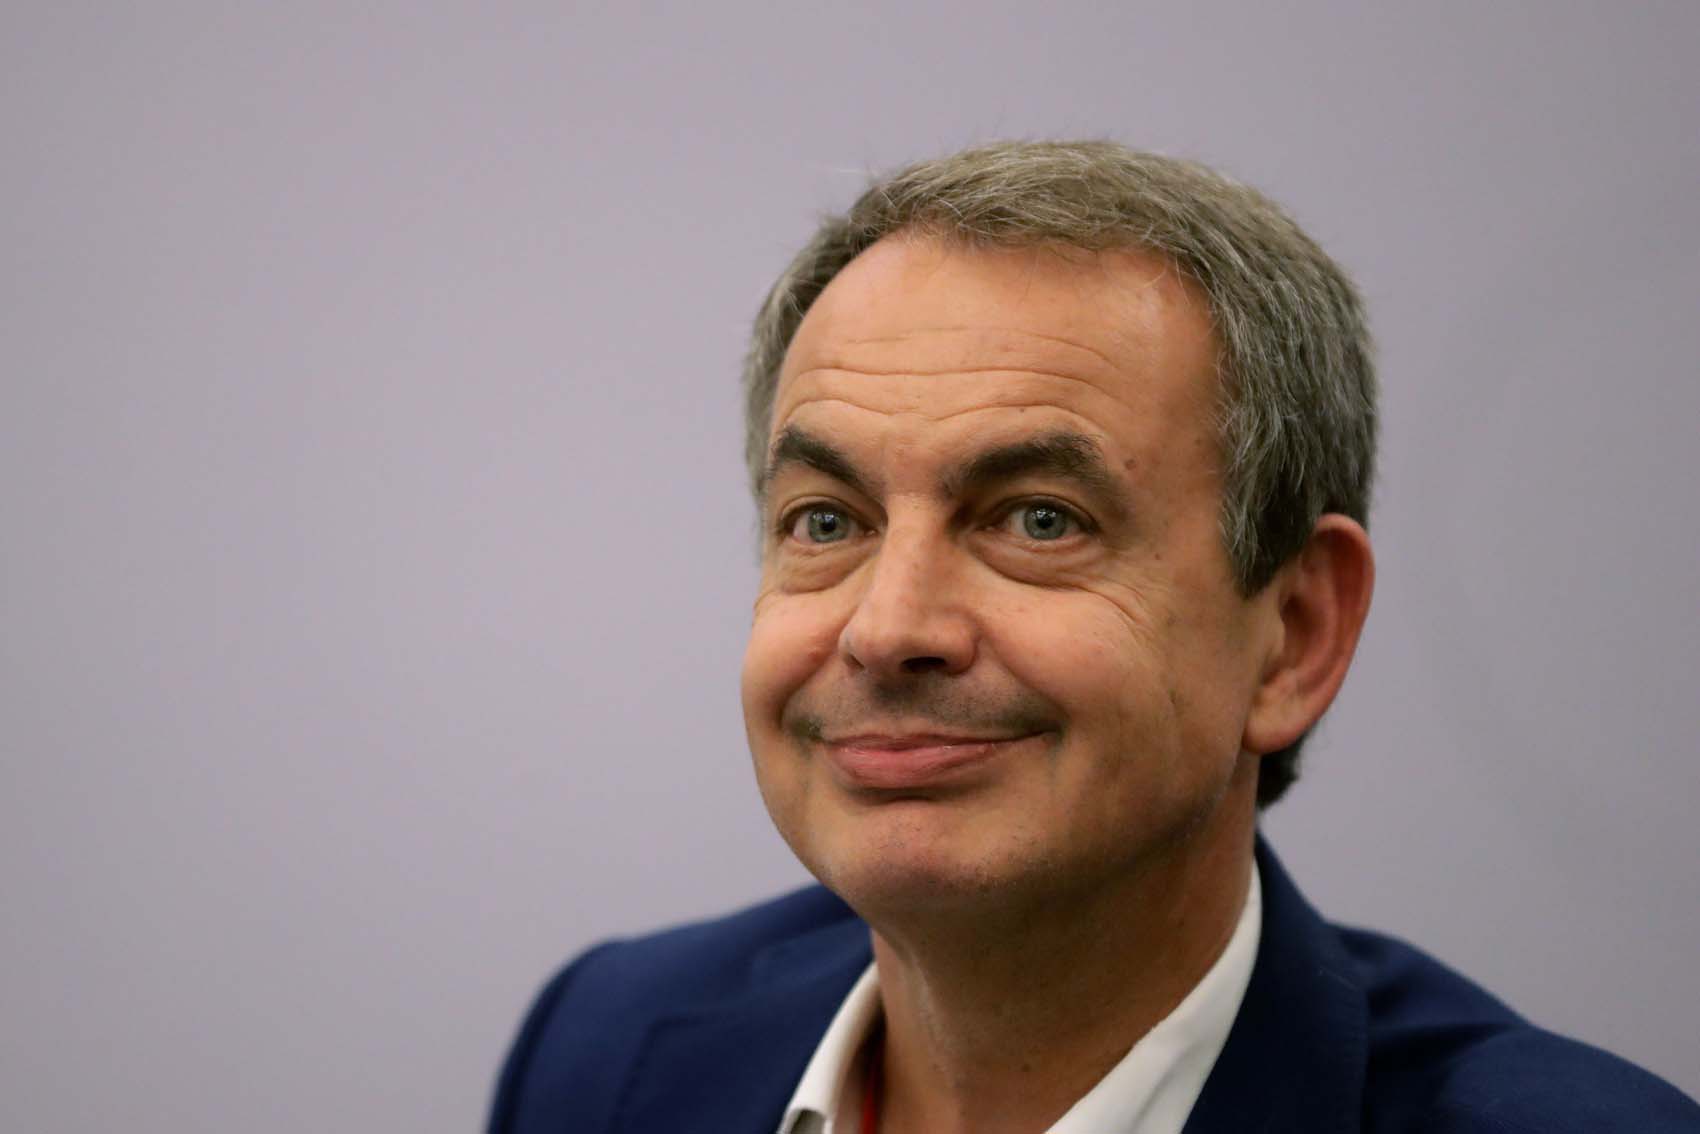 “¡Qué vergüenza!”: Las reacciones desde España a las declaraciones de Zapatero sobre el show electoral (video)